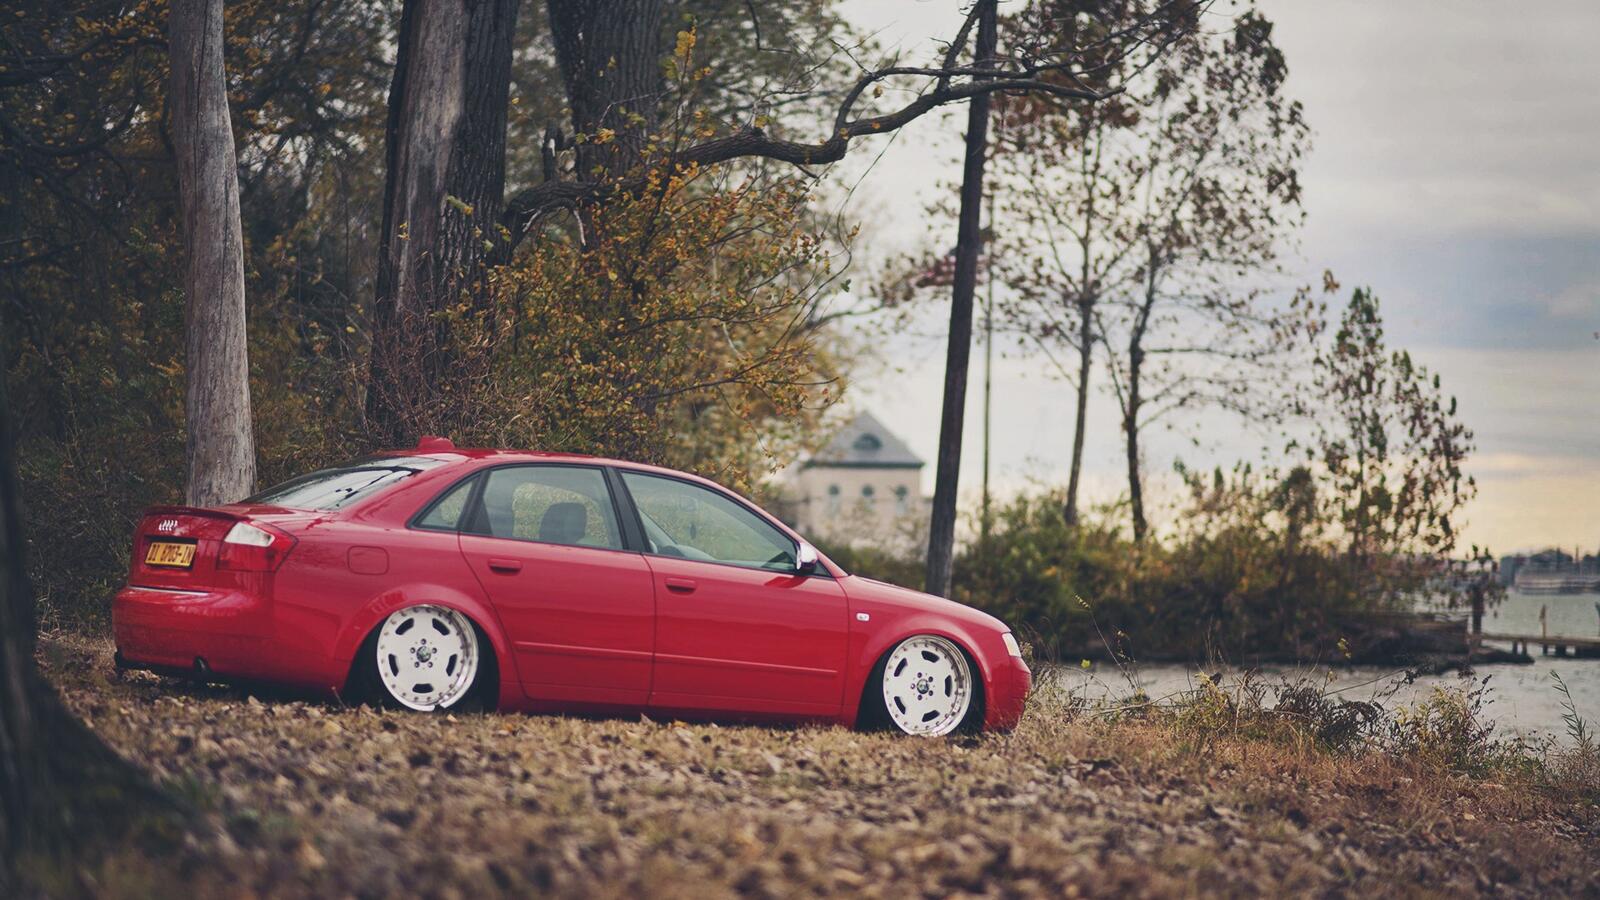 Бесплатное фото Заниженная Audi a4 красного цвета стоит на опавших листьях